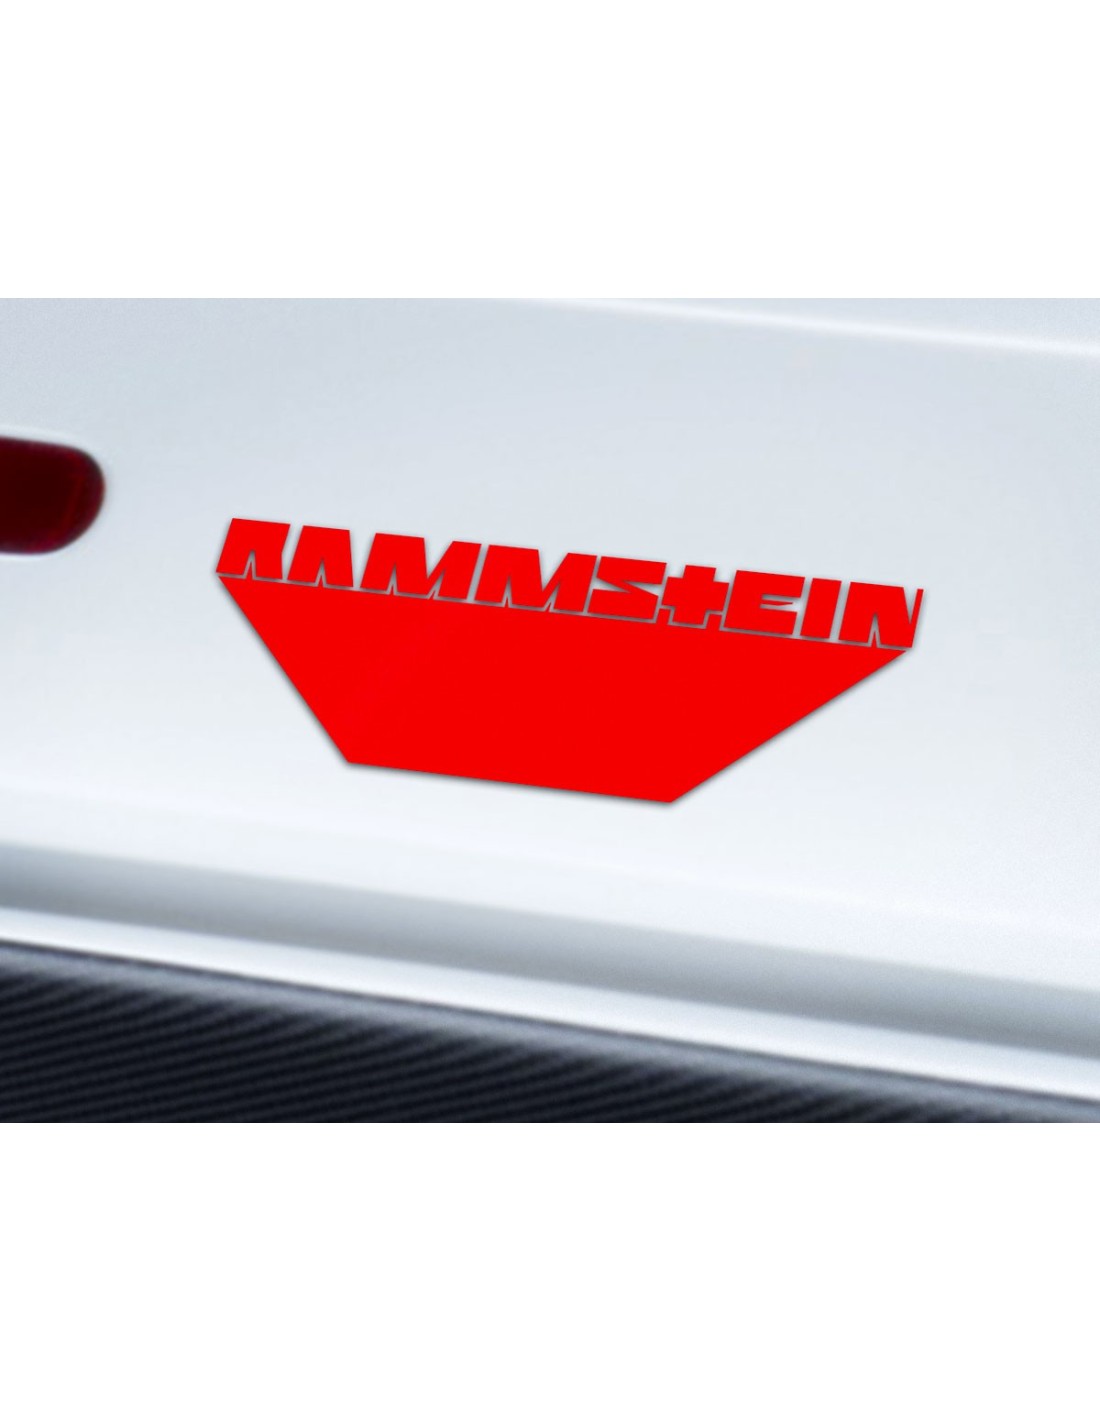 Stickers Rammstein pour personnaliser votre Carte Bleue selon lenvie du moment 